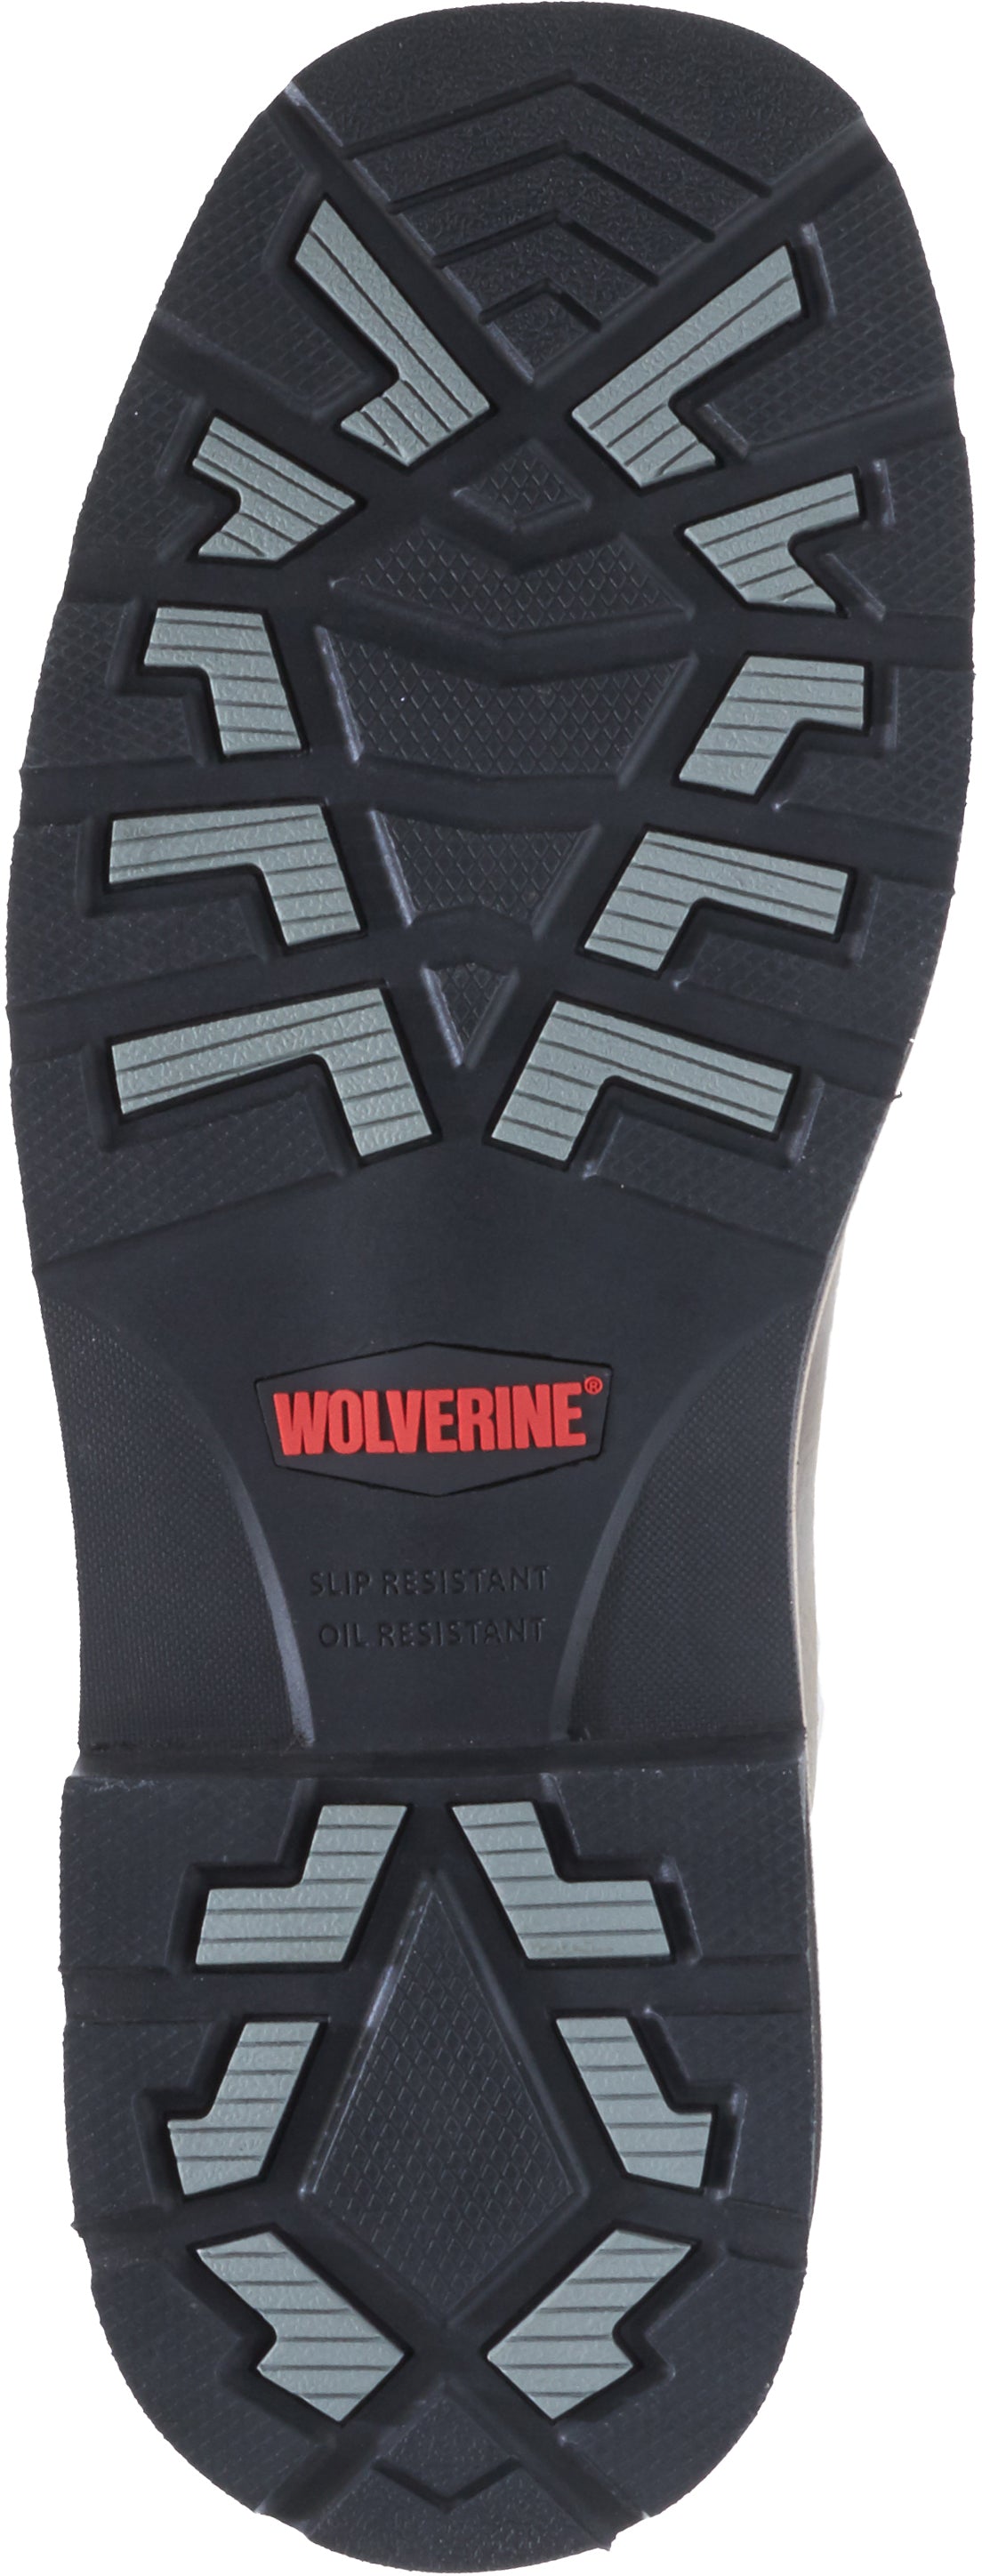 Wolverine W10702 Rancher Steel Toe